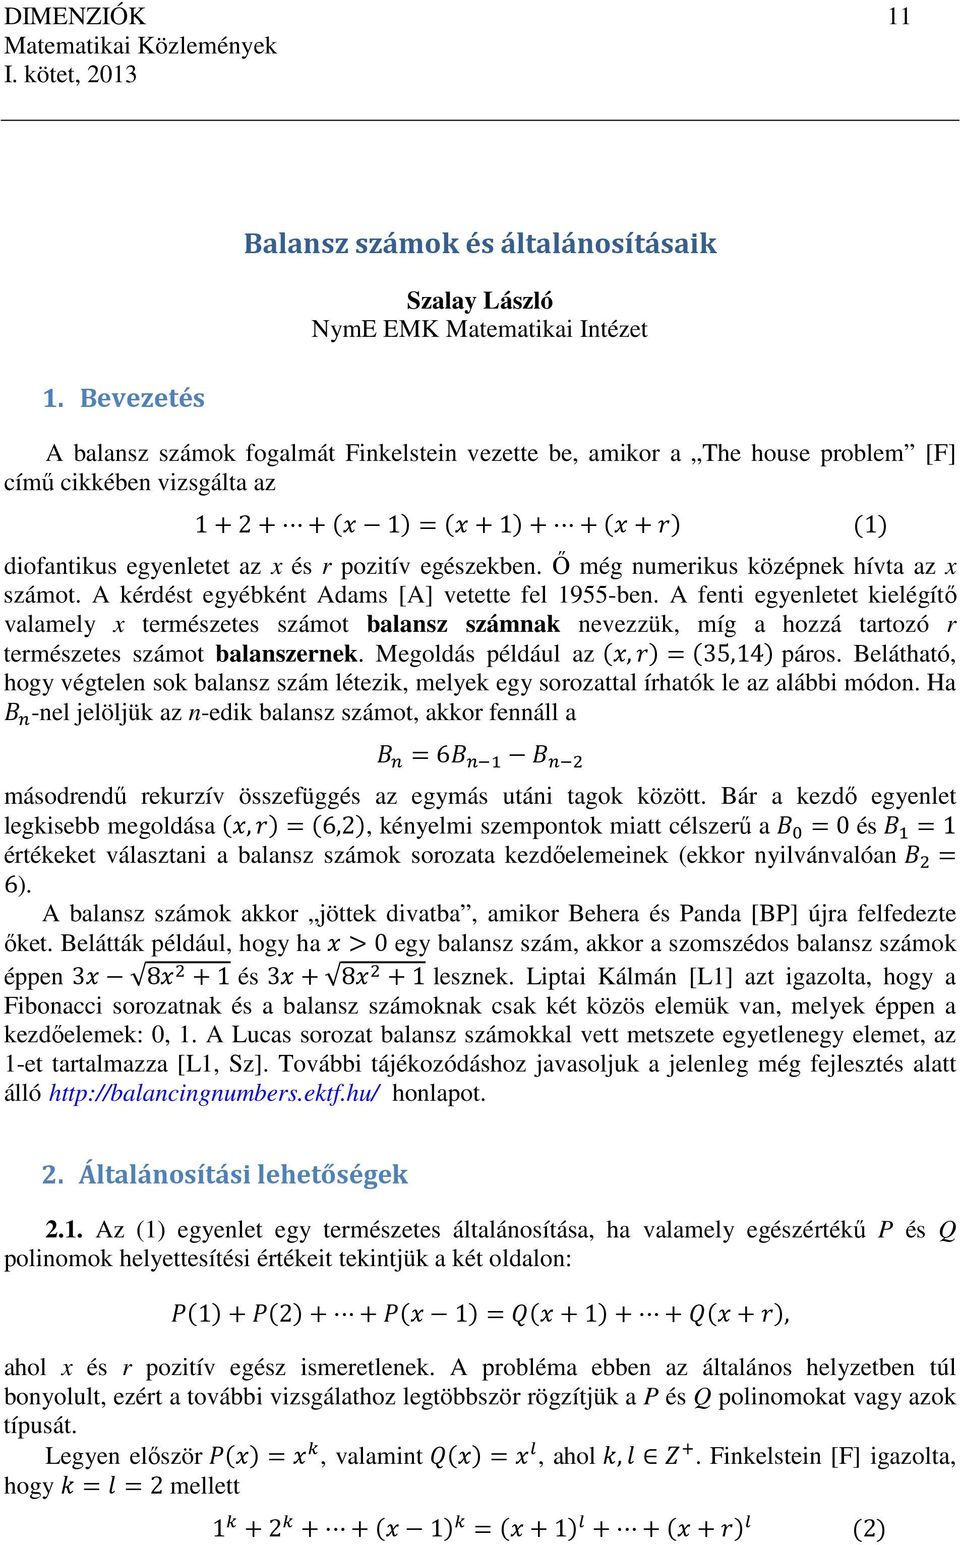 Matematikai Közlemények. I. kötet - PDF Ingyenes letöltés